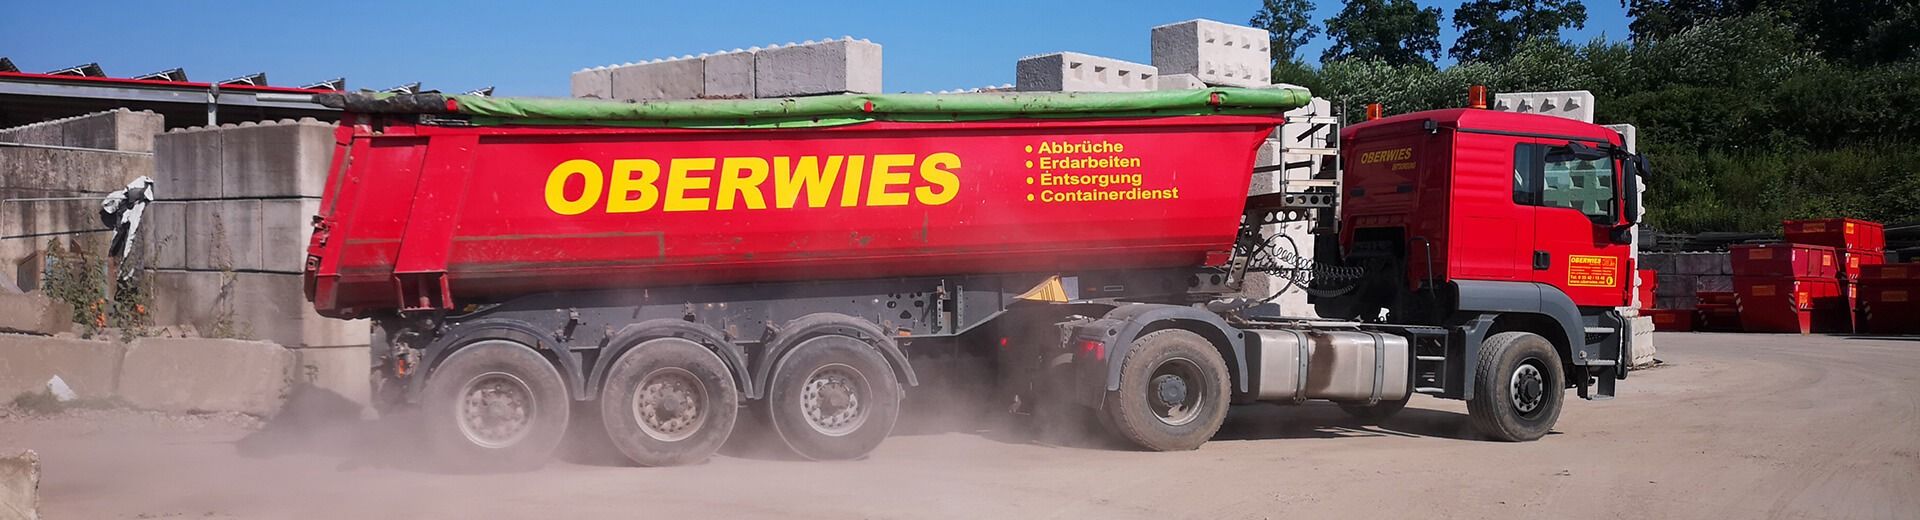 Oberwies GmbH und Co. KG